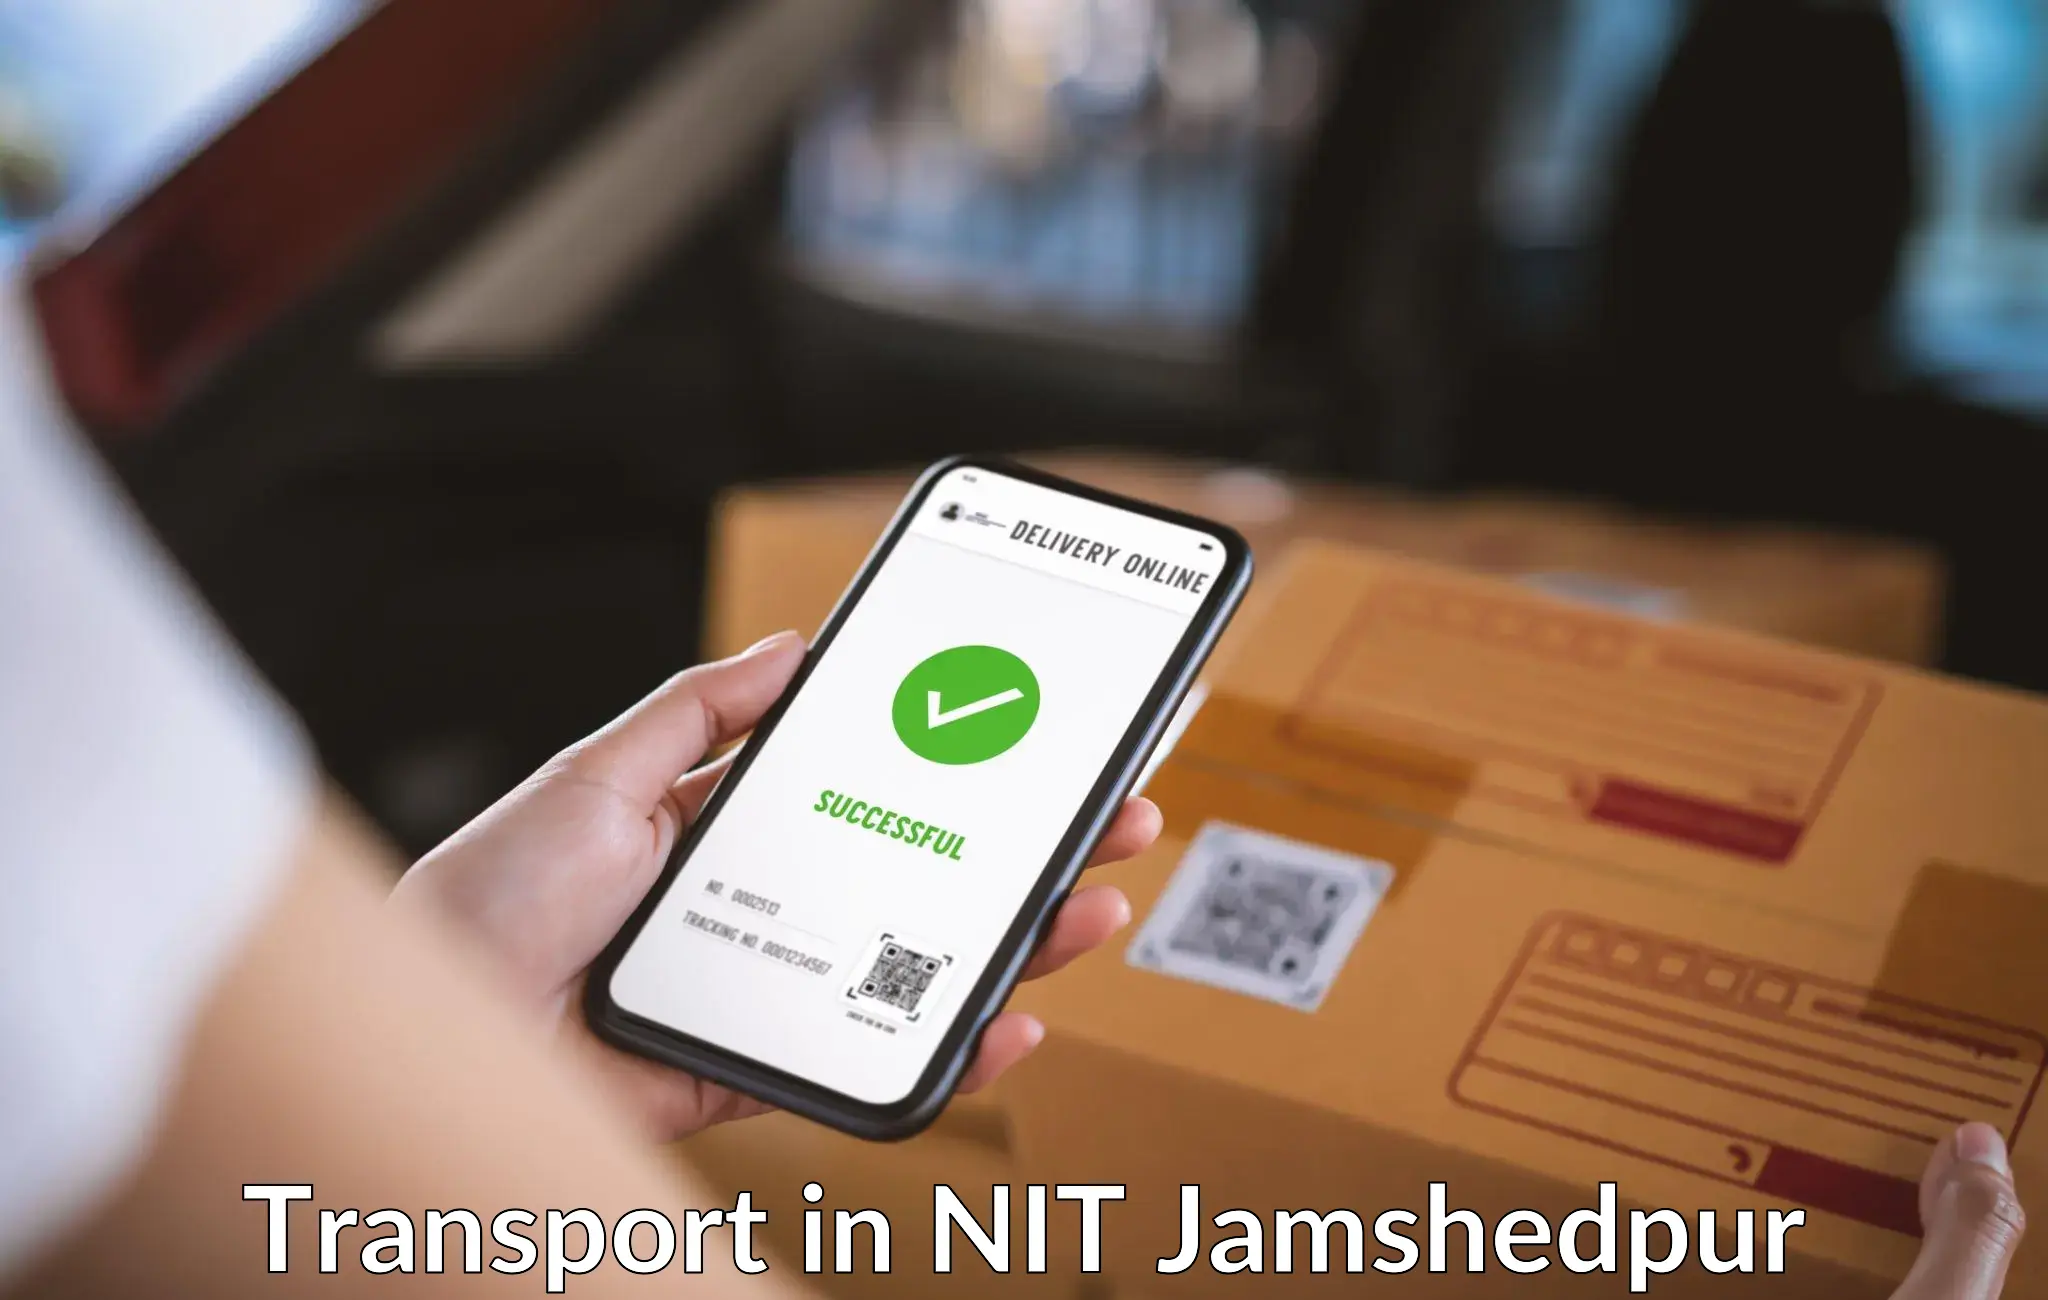 Online transport in NIT Jamshedpur